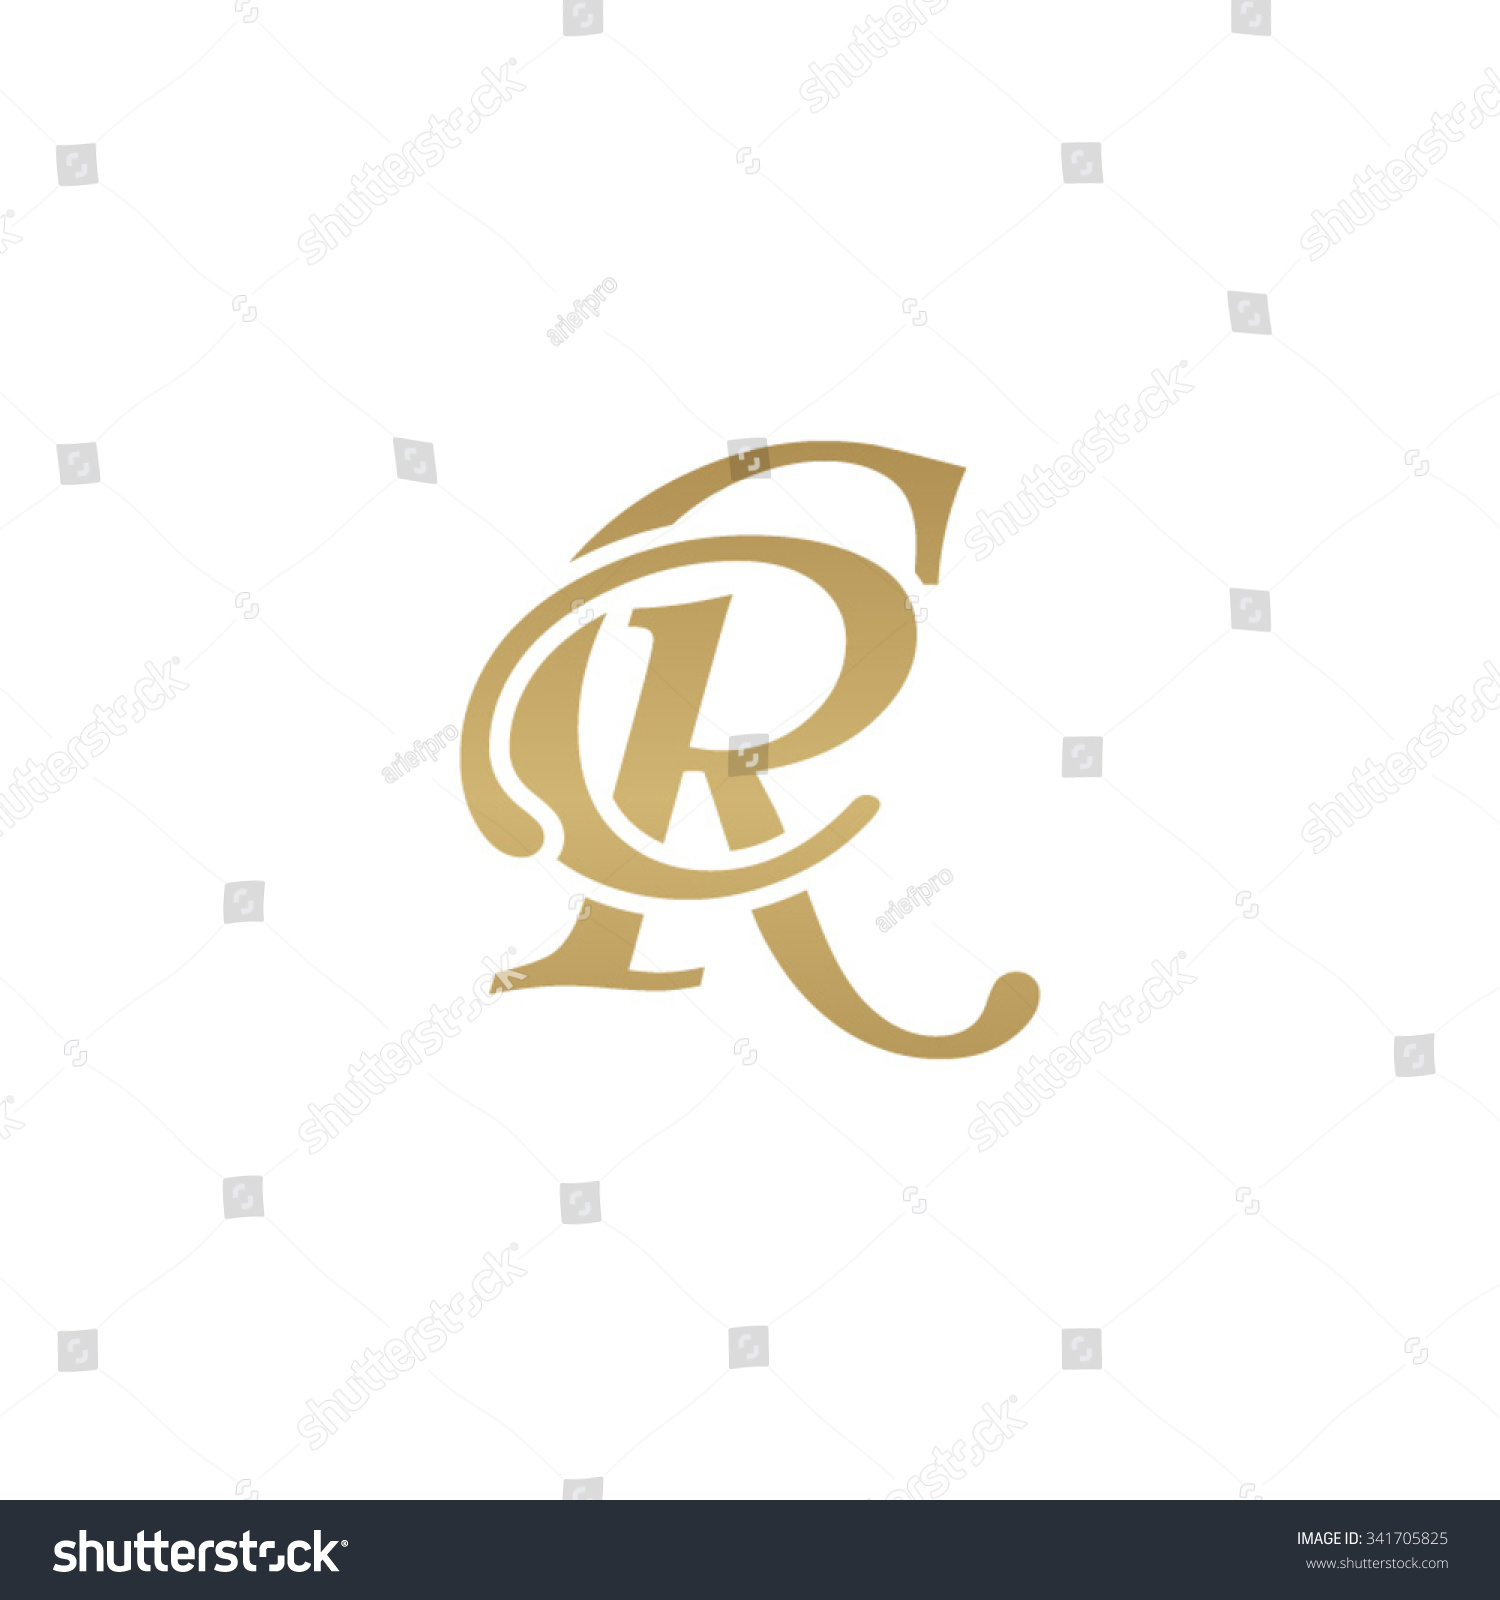 Cr Initial Monogram Logo Stock Vector Illustration 341705825 Shutterstock